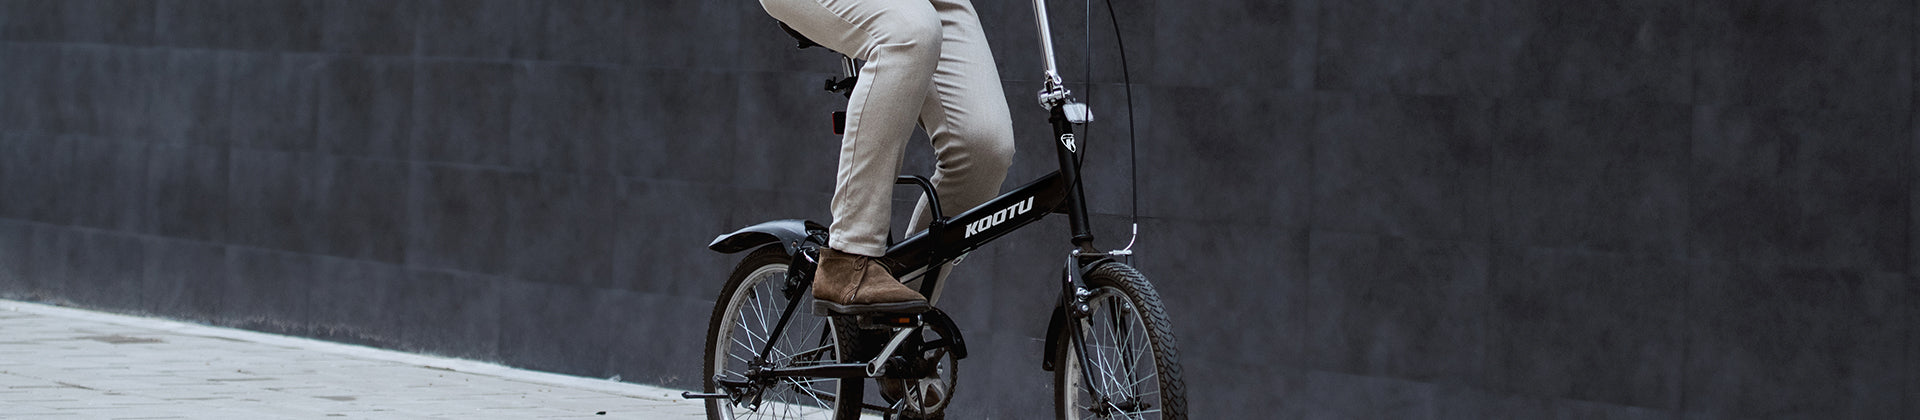 carbon folding bicycle-kootu bike